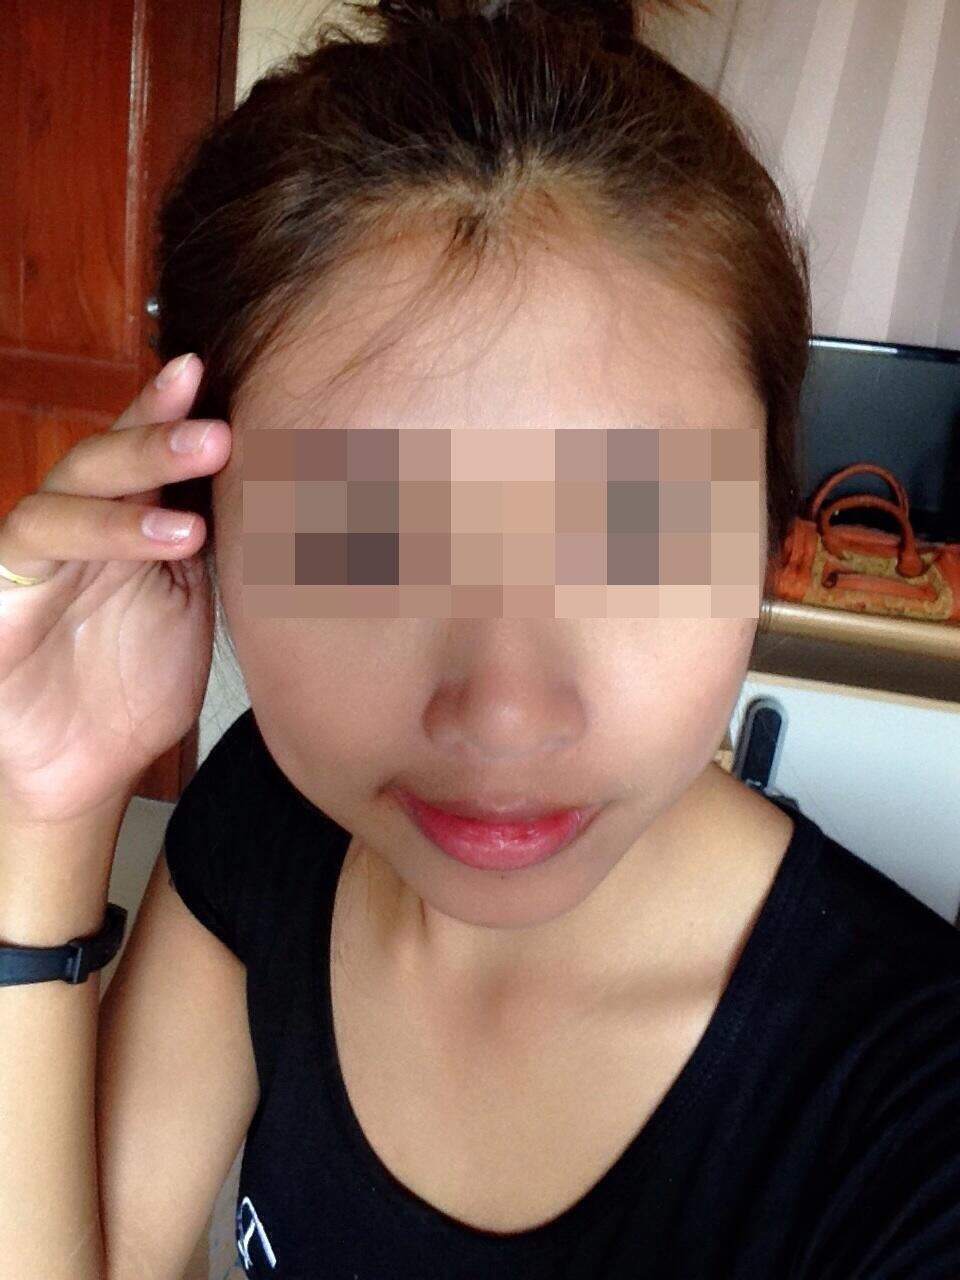 หนุ่มญี่ปุ่นทำ iPhone หายในไทย พอเห็นรูปสาวที่เก็บได้ กลับยกให้